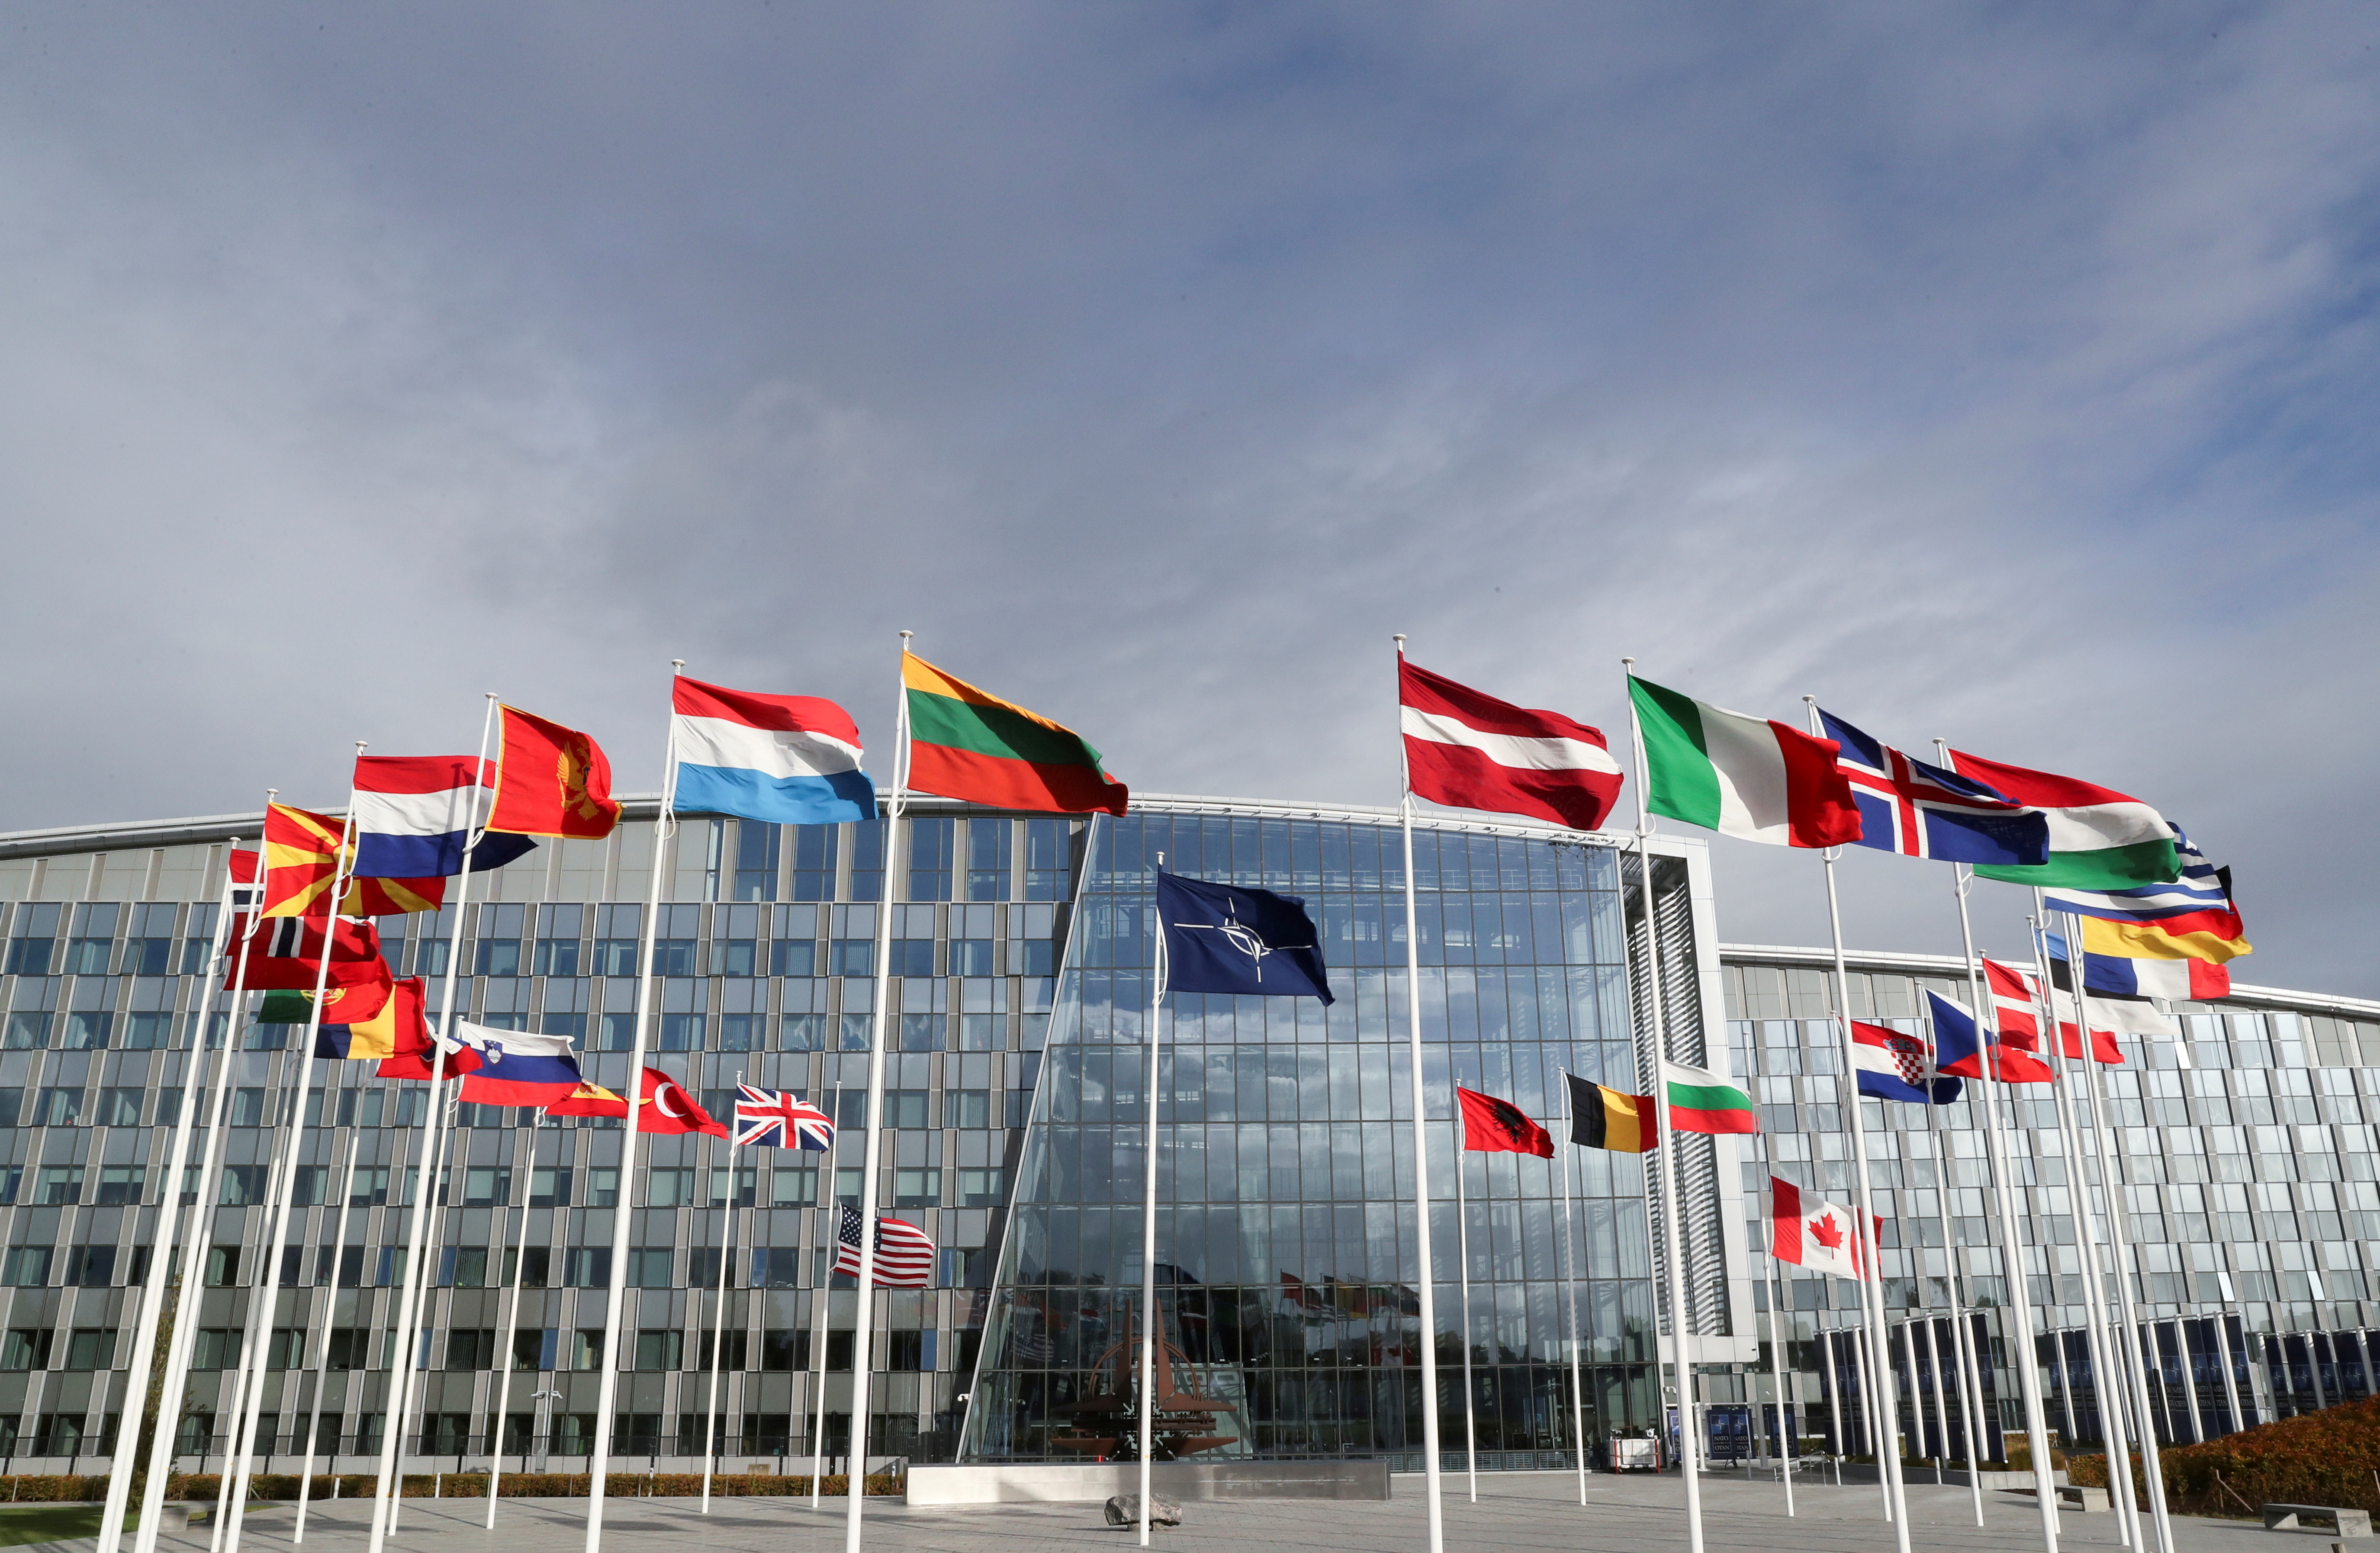 Прапори майорять біля штаб-квартири Альянсу напередодні зустрічі міністрів оборони НАТО в Брюсселі, Бельгія, 21 жовтня 2021 року. REUTERS/Pascal Rossignol/File Photo